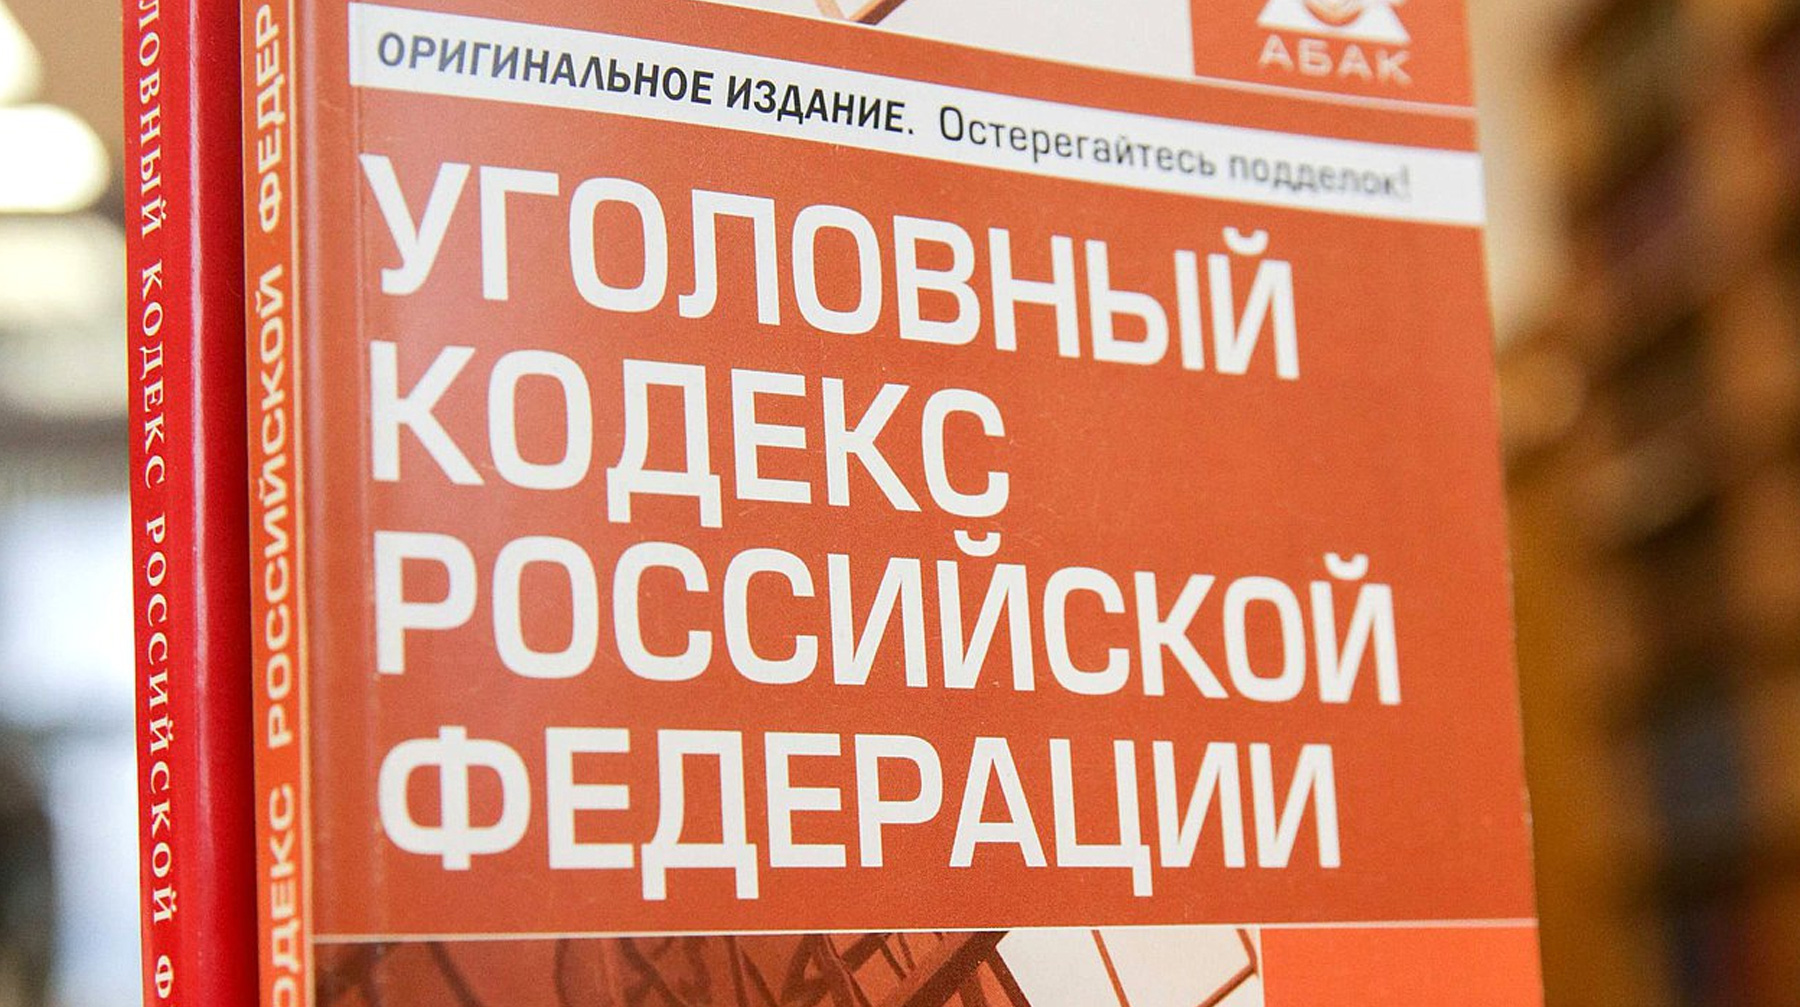 Авторы законопроекта не учли интересы потерпевших и возможные дополнительные расходы бюджета, считают в правительстве Фото: © duma.gov.ru